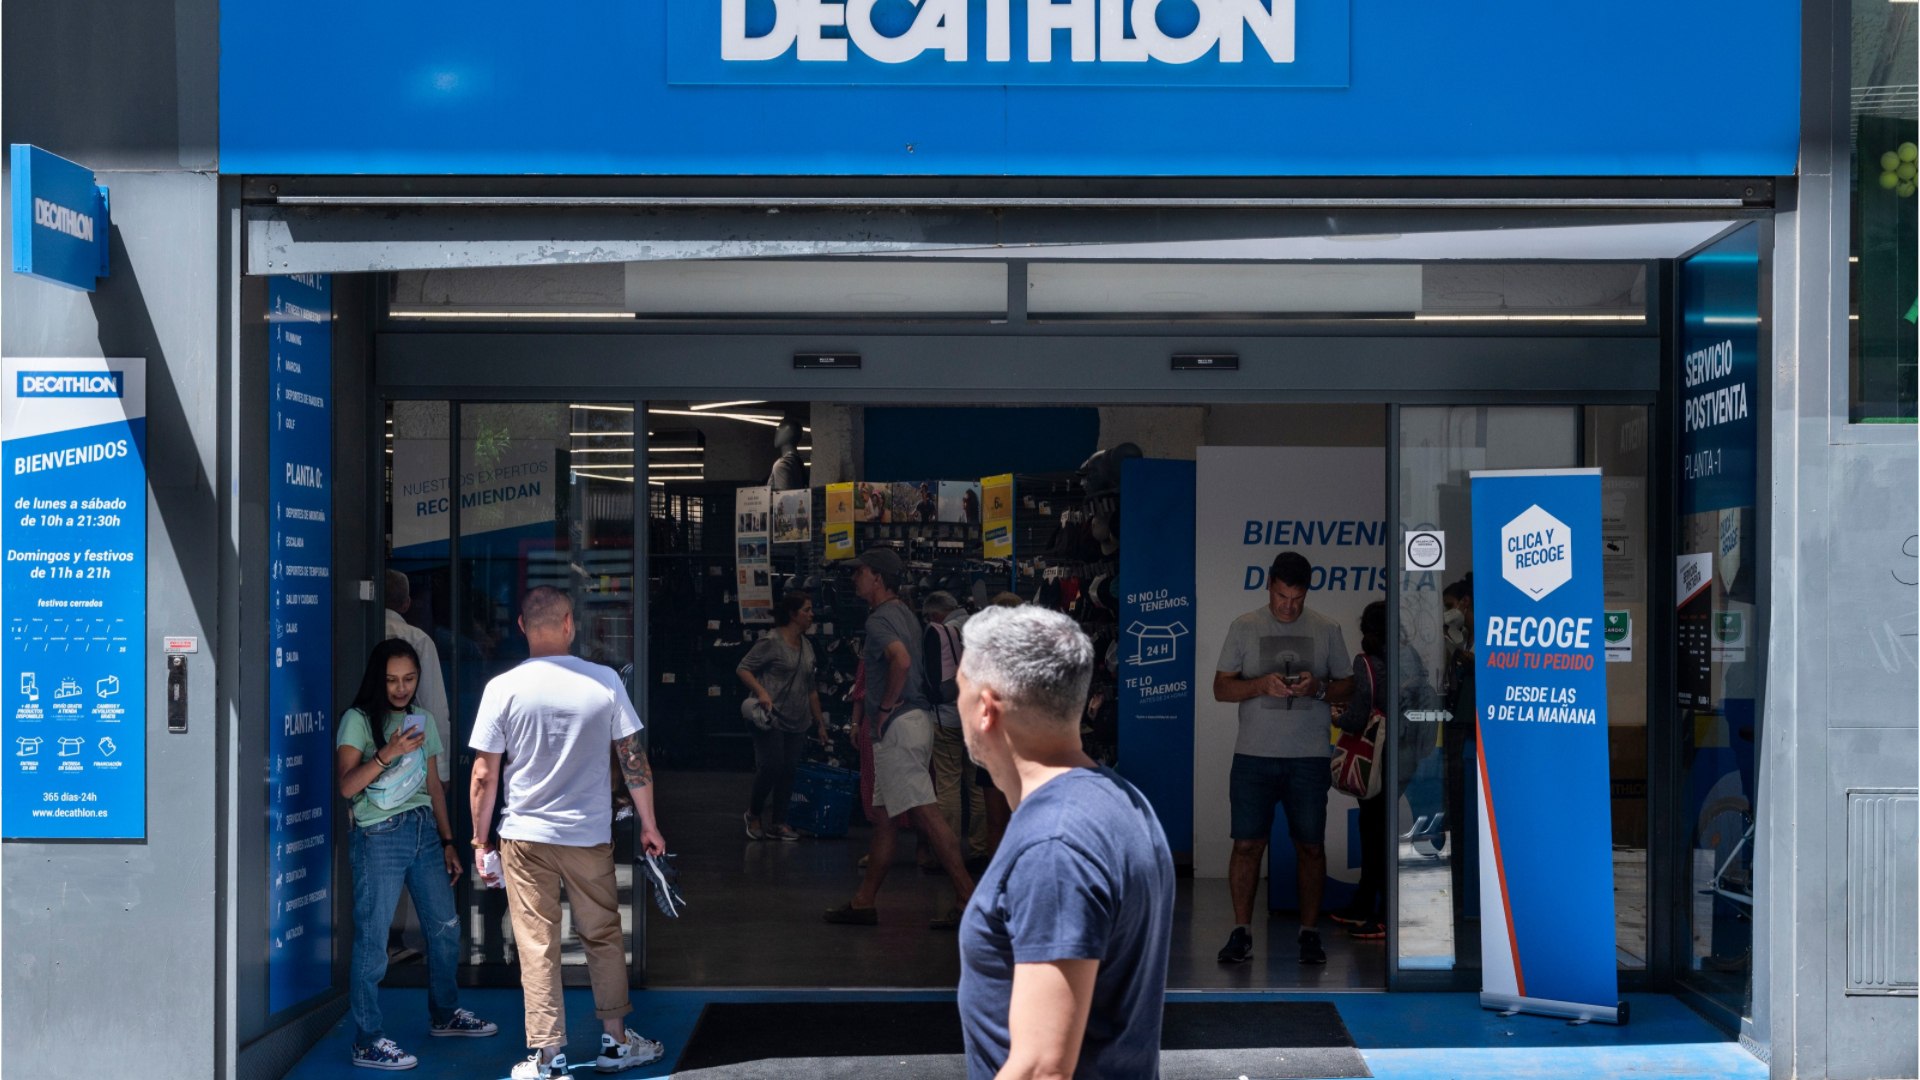 Decathlon : 7 choses à ne pas faire en magasin selon les employés - Vidéo  Dailymotion